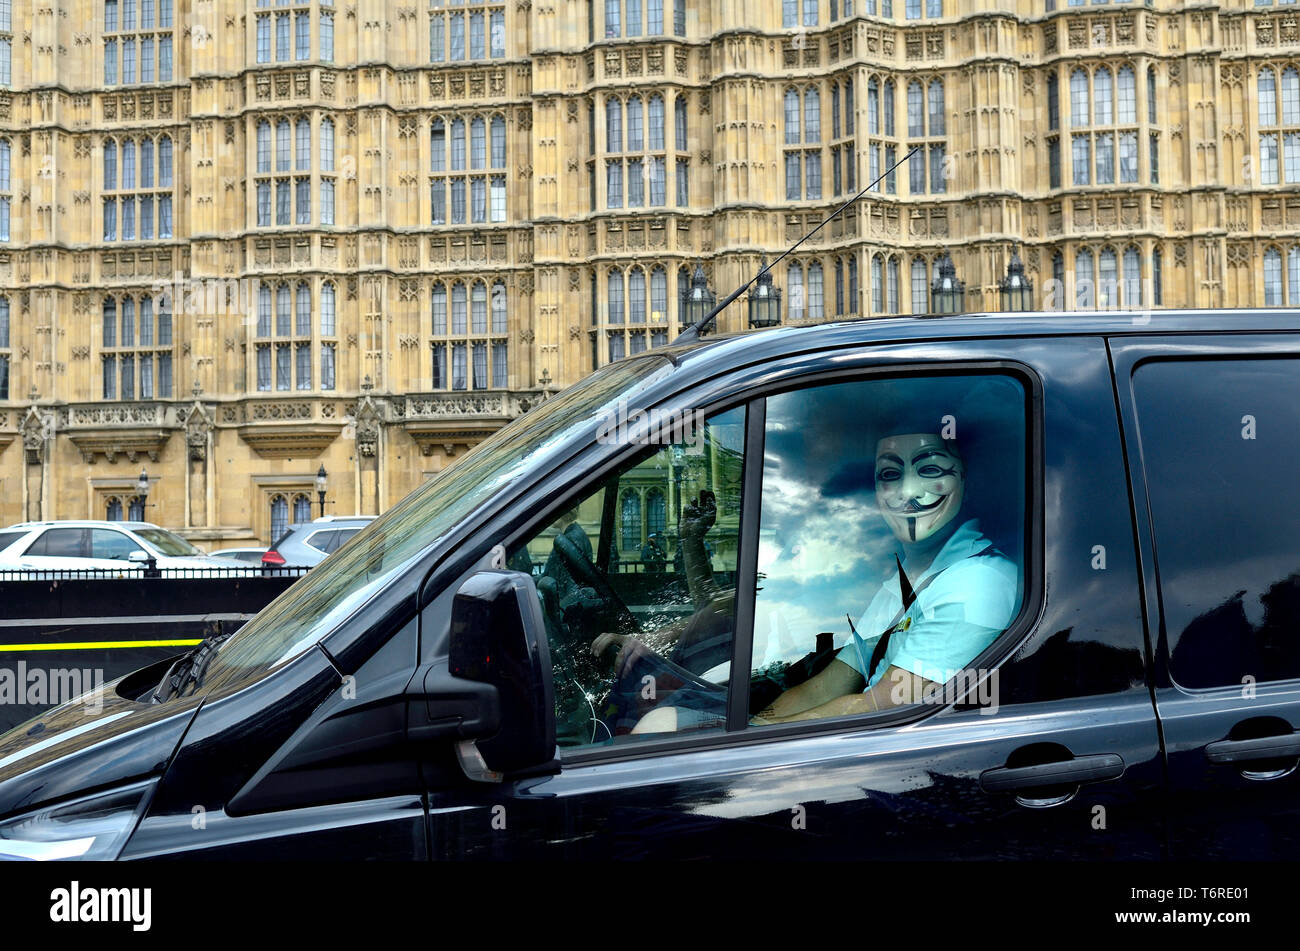 Londres, Inglaterra, Reino Unido. Hombre que llevaba una máscara de V de Vendetta en el asiento del pasajero de una furgoneta, pasando por las Casas del Parlamento Foto de stock